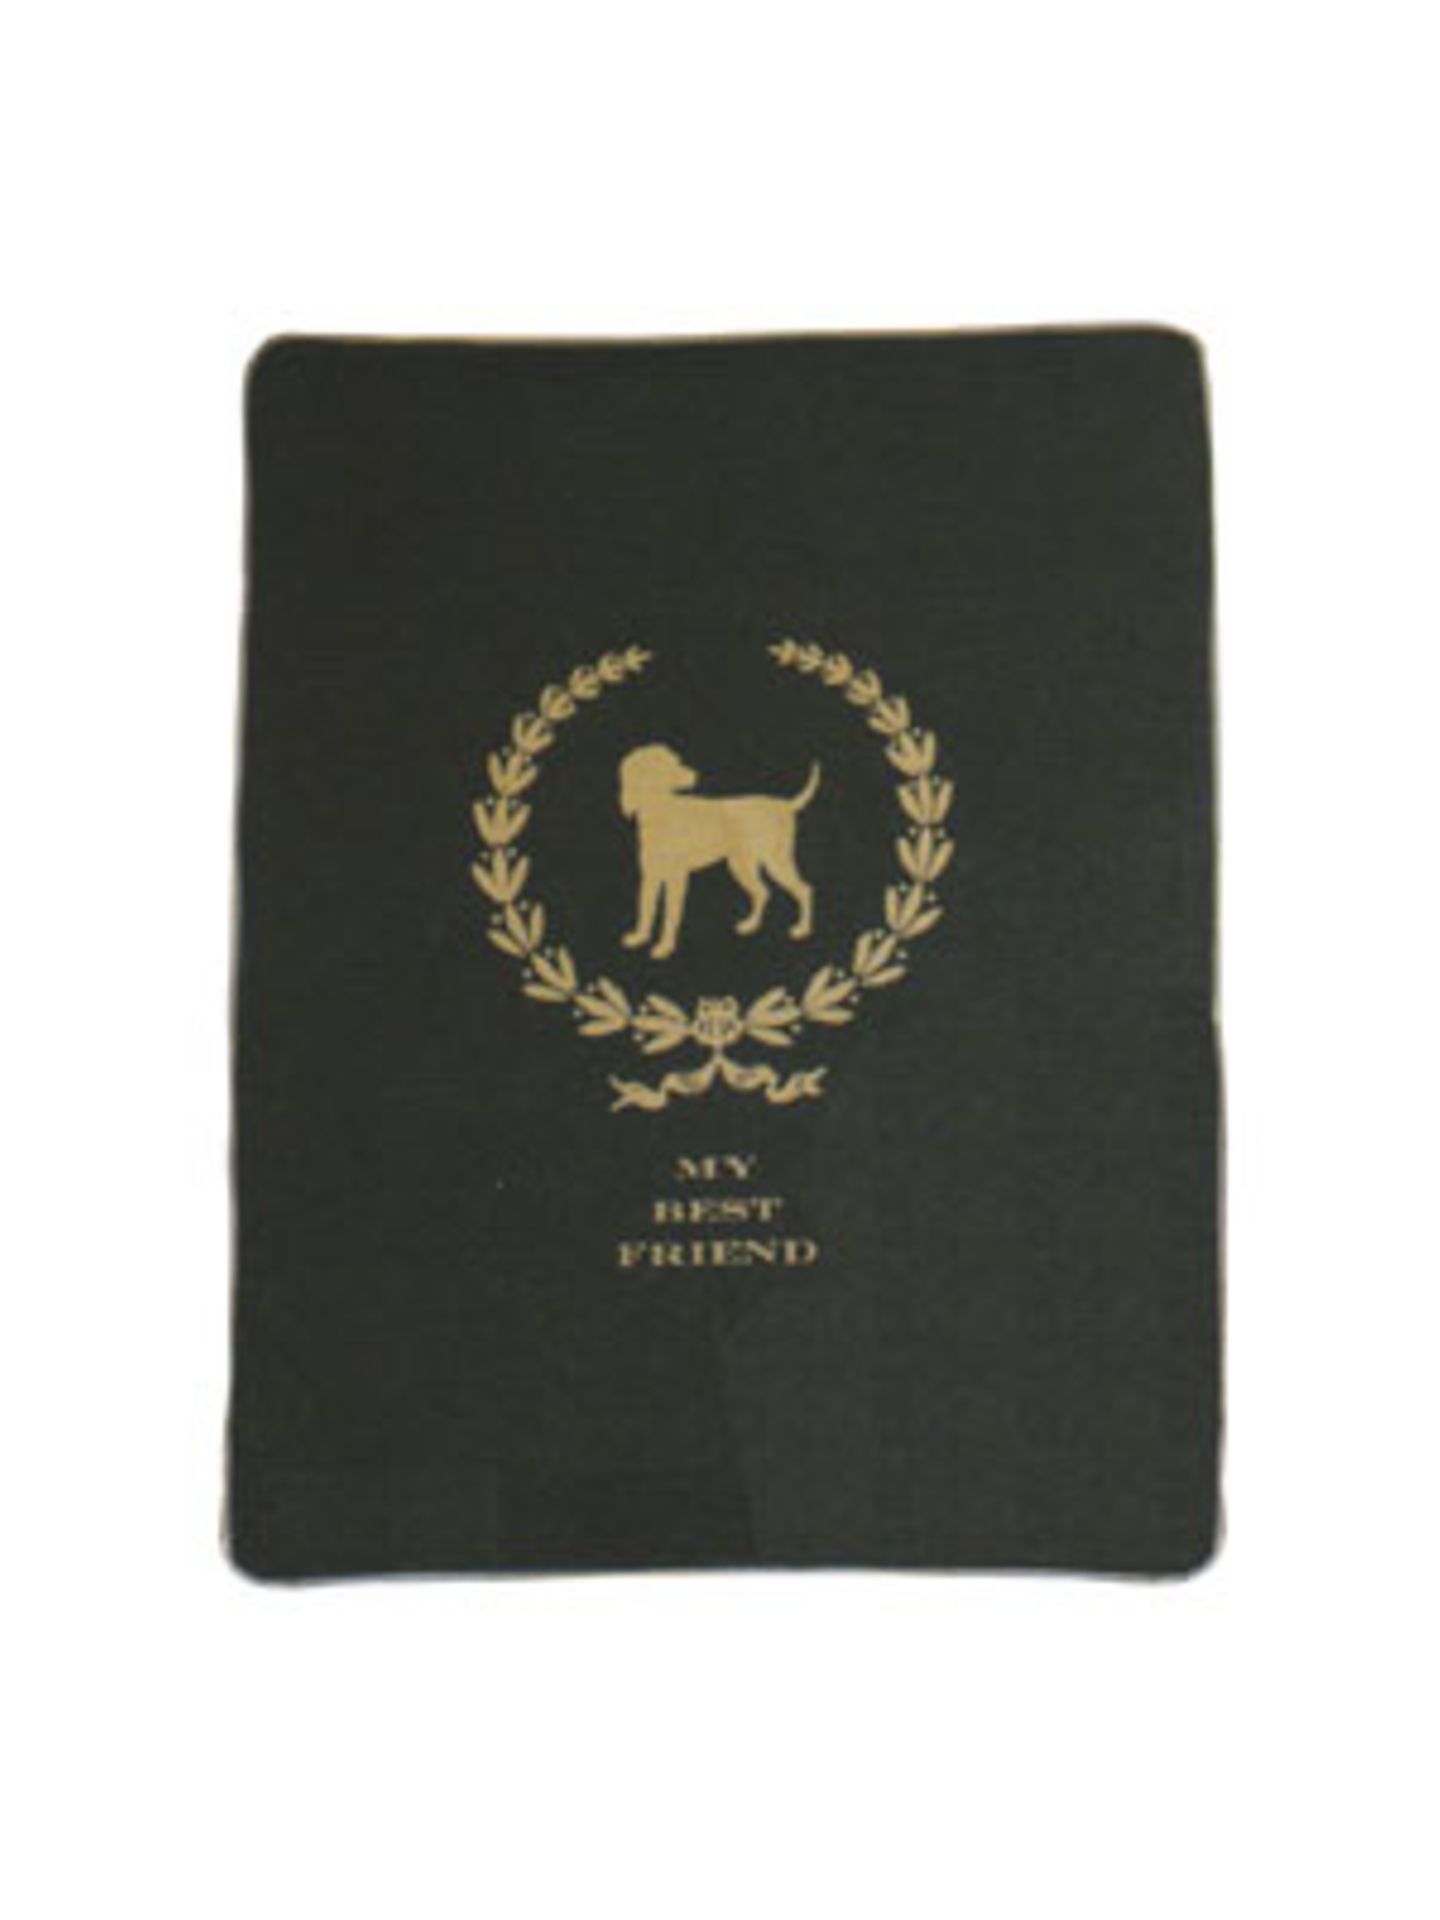 Hundedecke in Schwarz-Grau mit goldenem Schriftzug "My Best Friend" von Pinja Fashion, um 15 Euro.